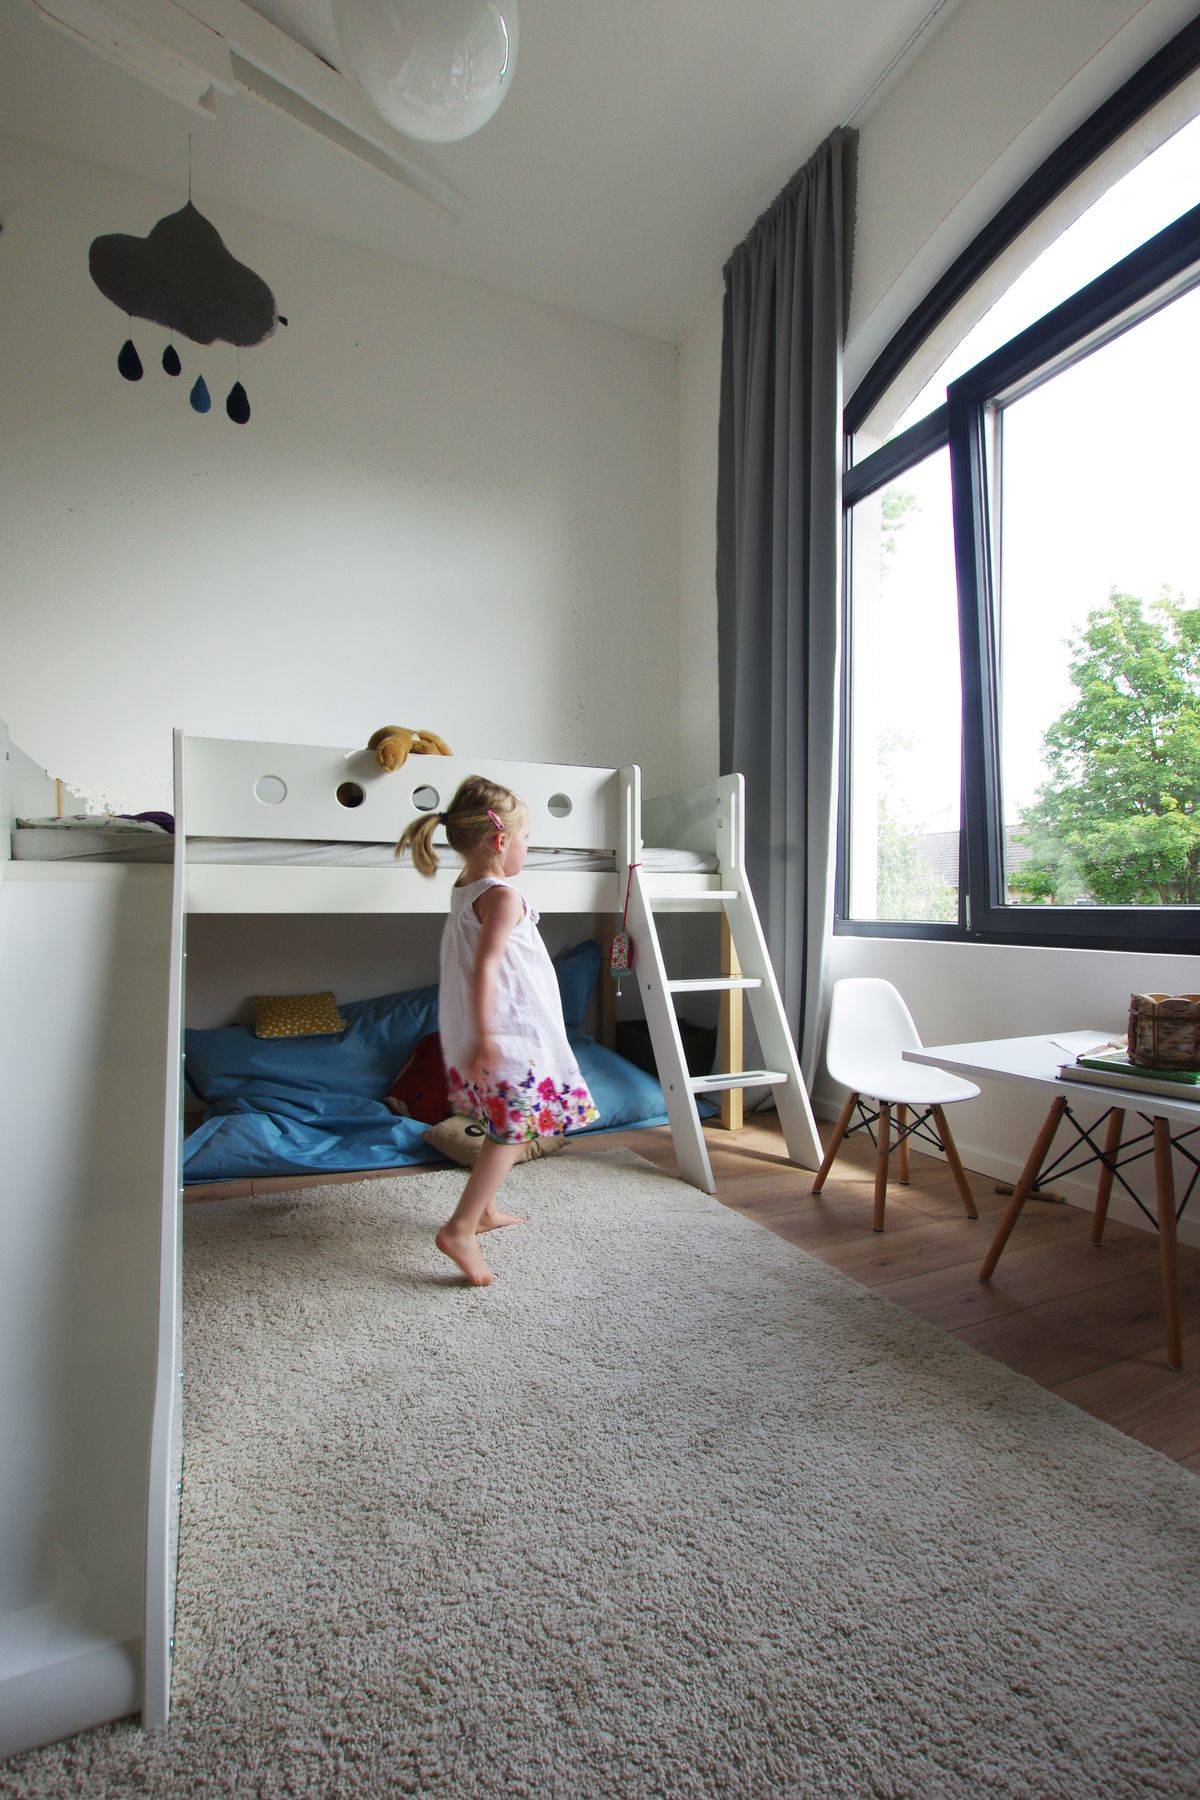 Verdunkelung im Kinderzimmer: 8 Ideen, wie Sie effektiv Fenster abdunkeln